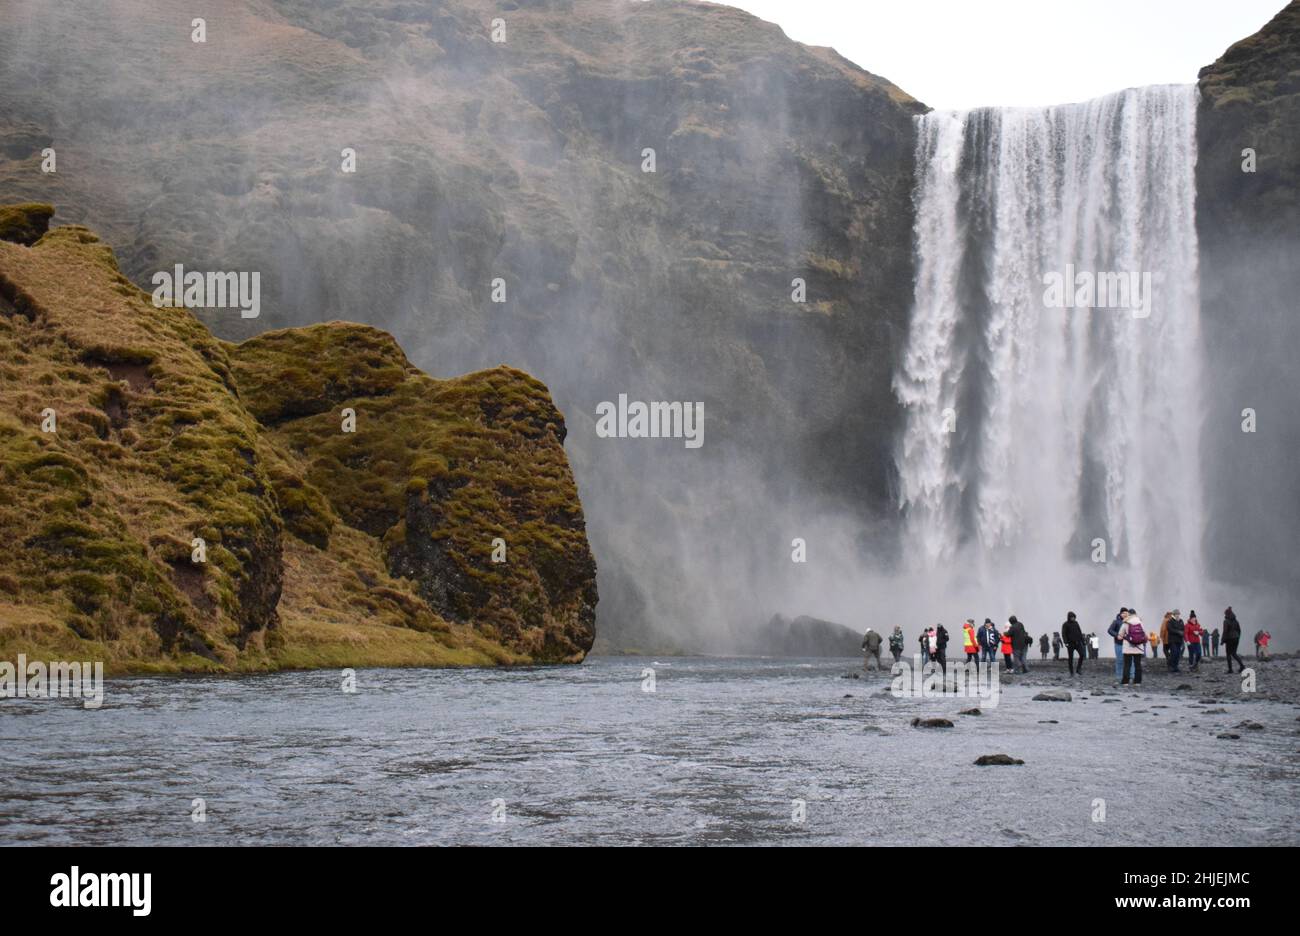 Gennaio 22 Islanda del Sud Un gruppo di turisti che visitano la famosa cascata islandese, Skogafoss. La gente è oscesa dall'enorme cascata alle loro spalle Foto Stock